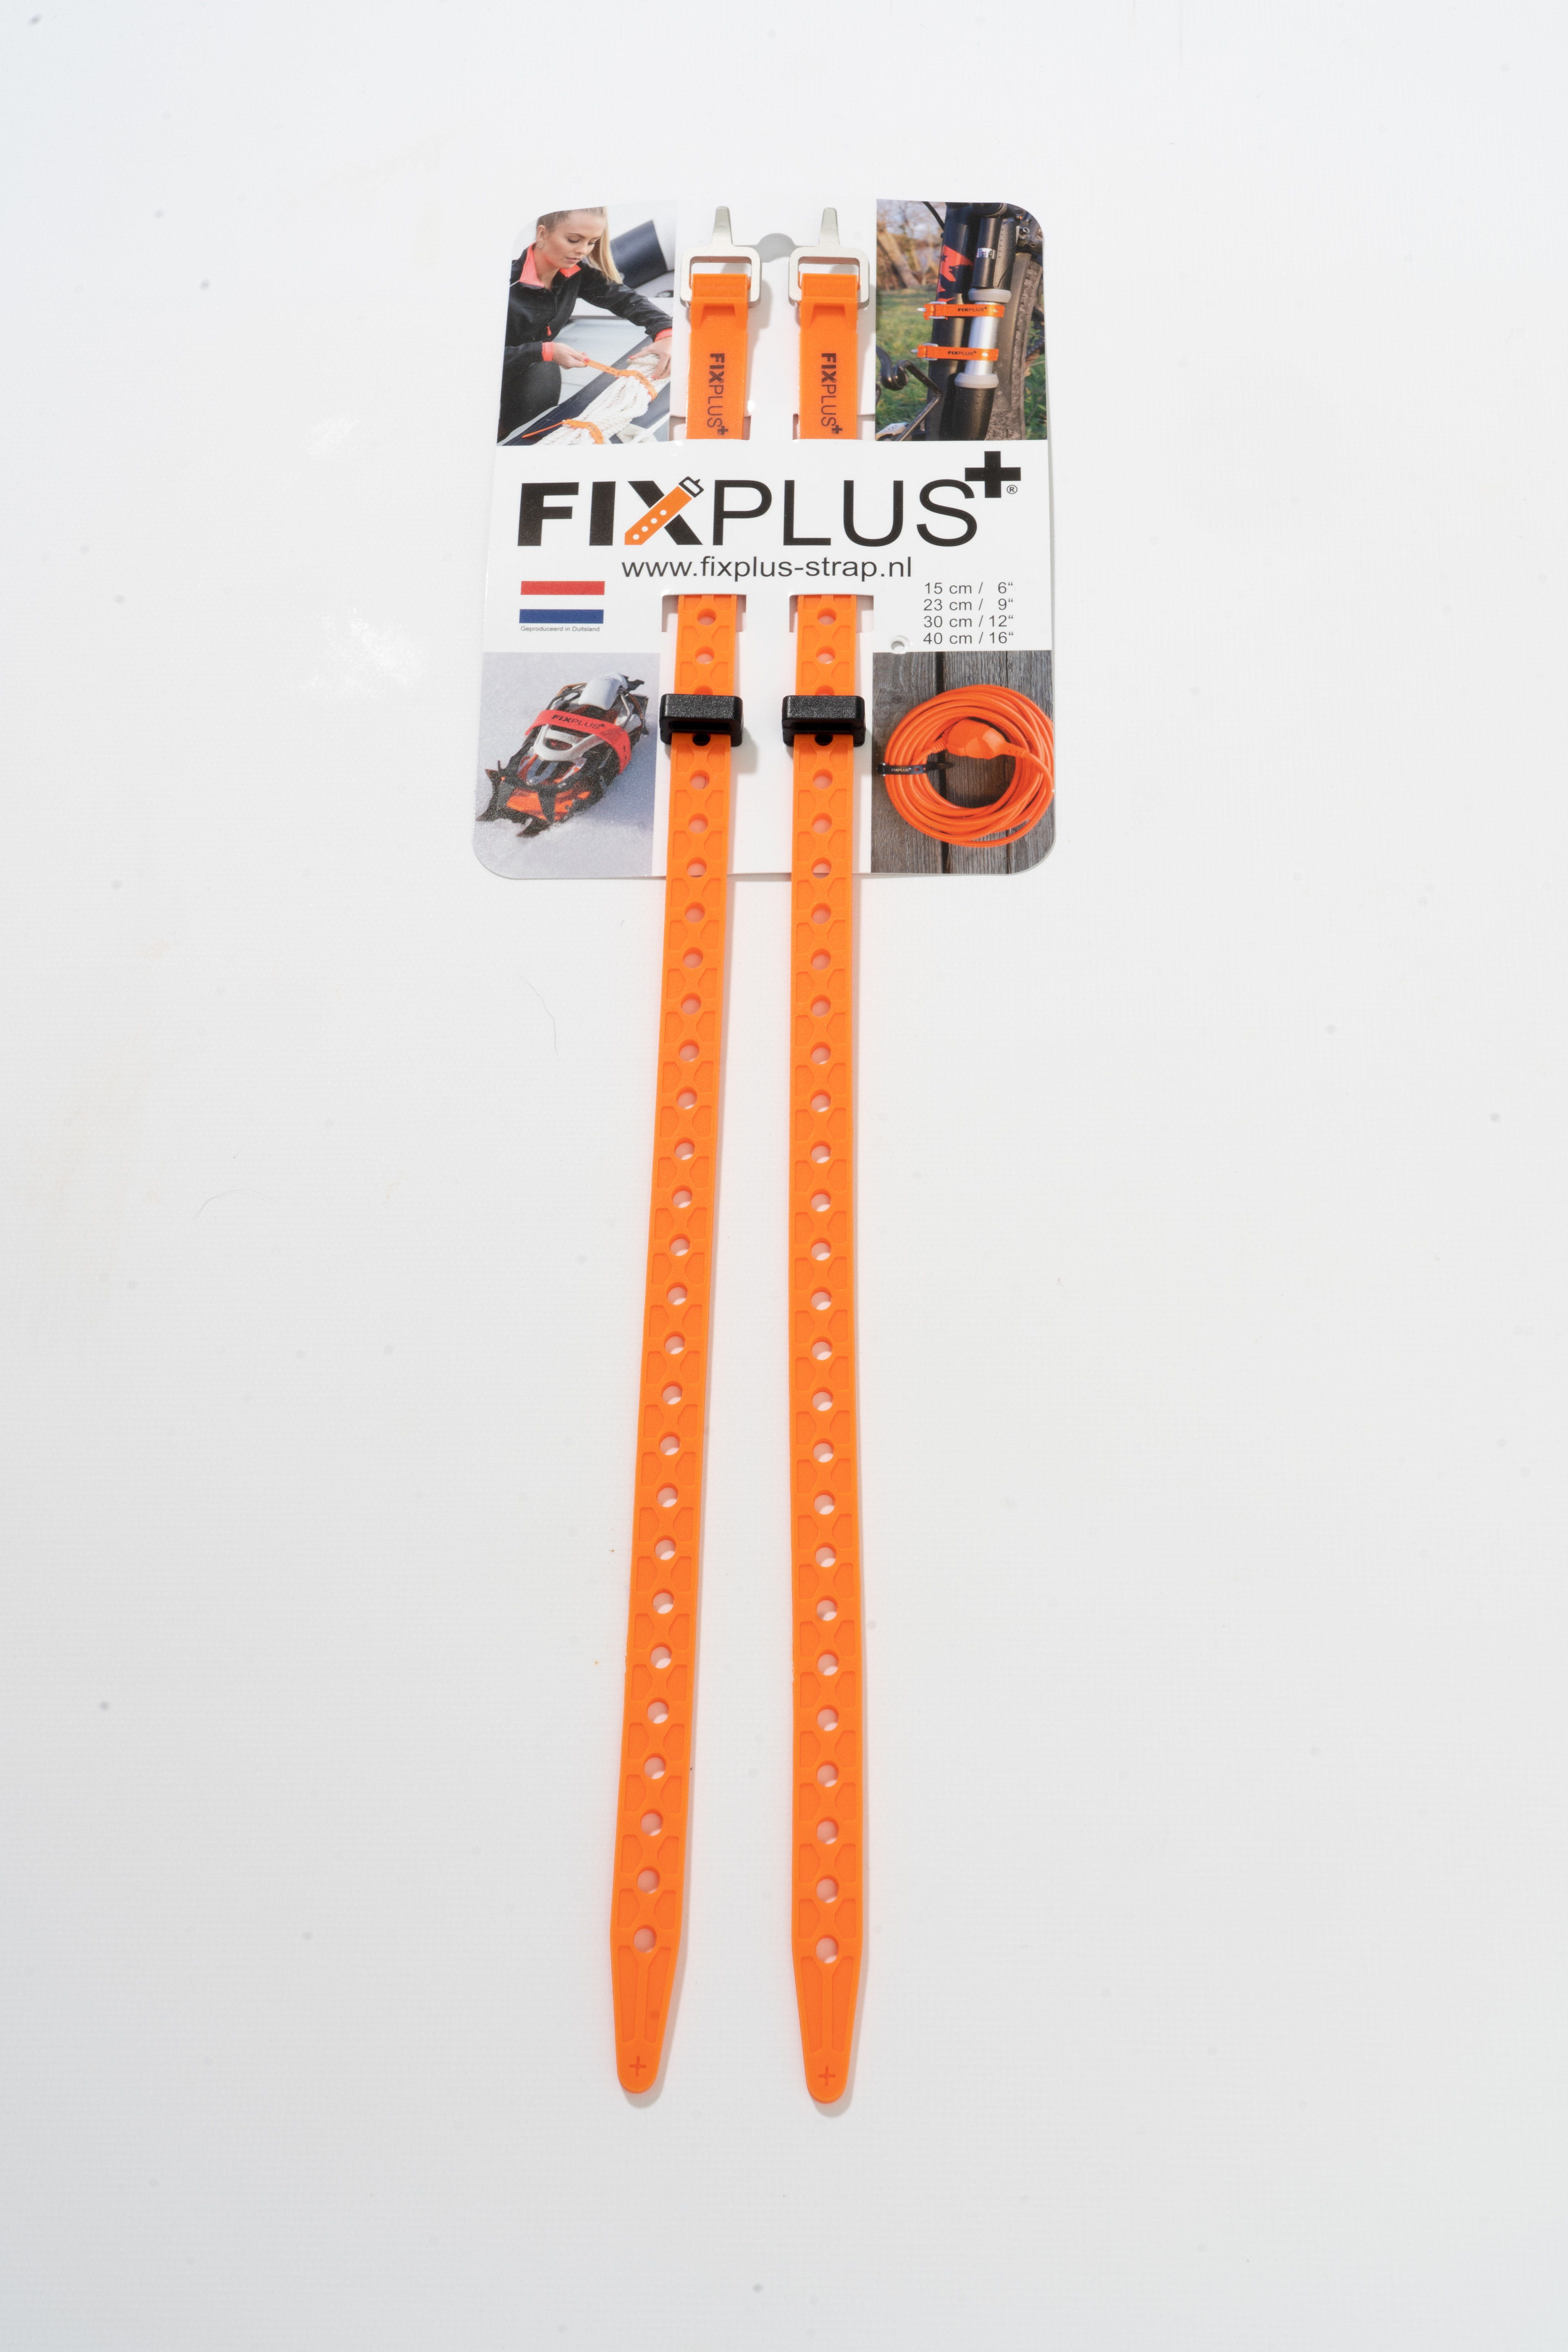 Fixplus strap set 40cm oranje